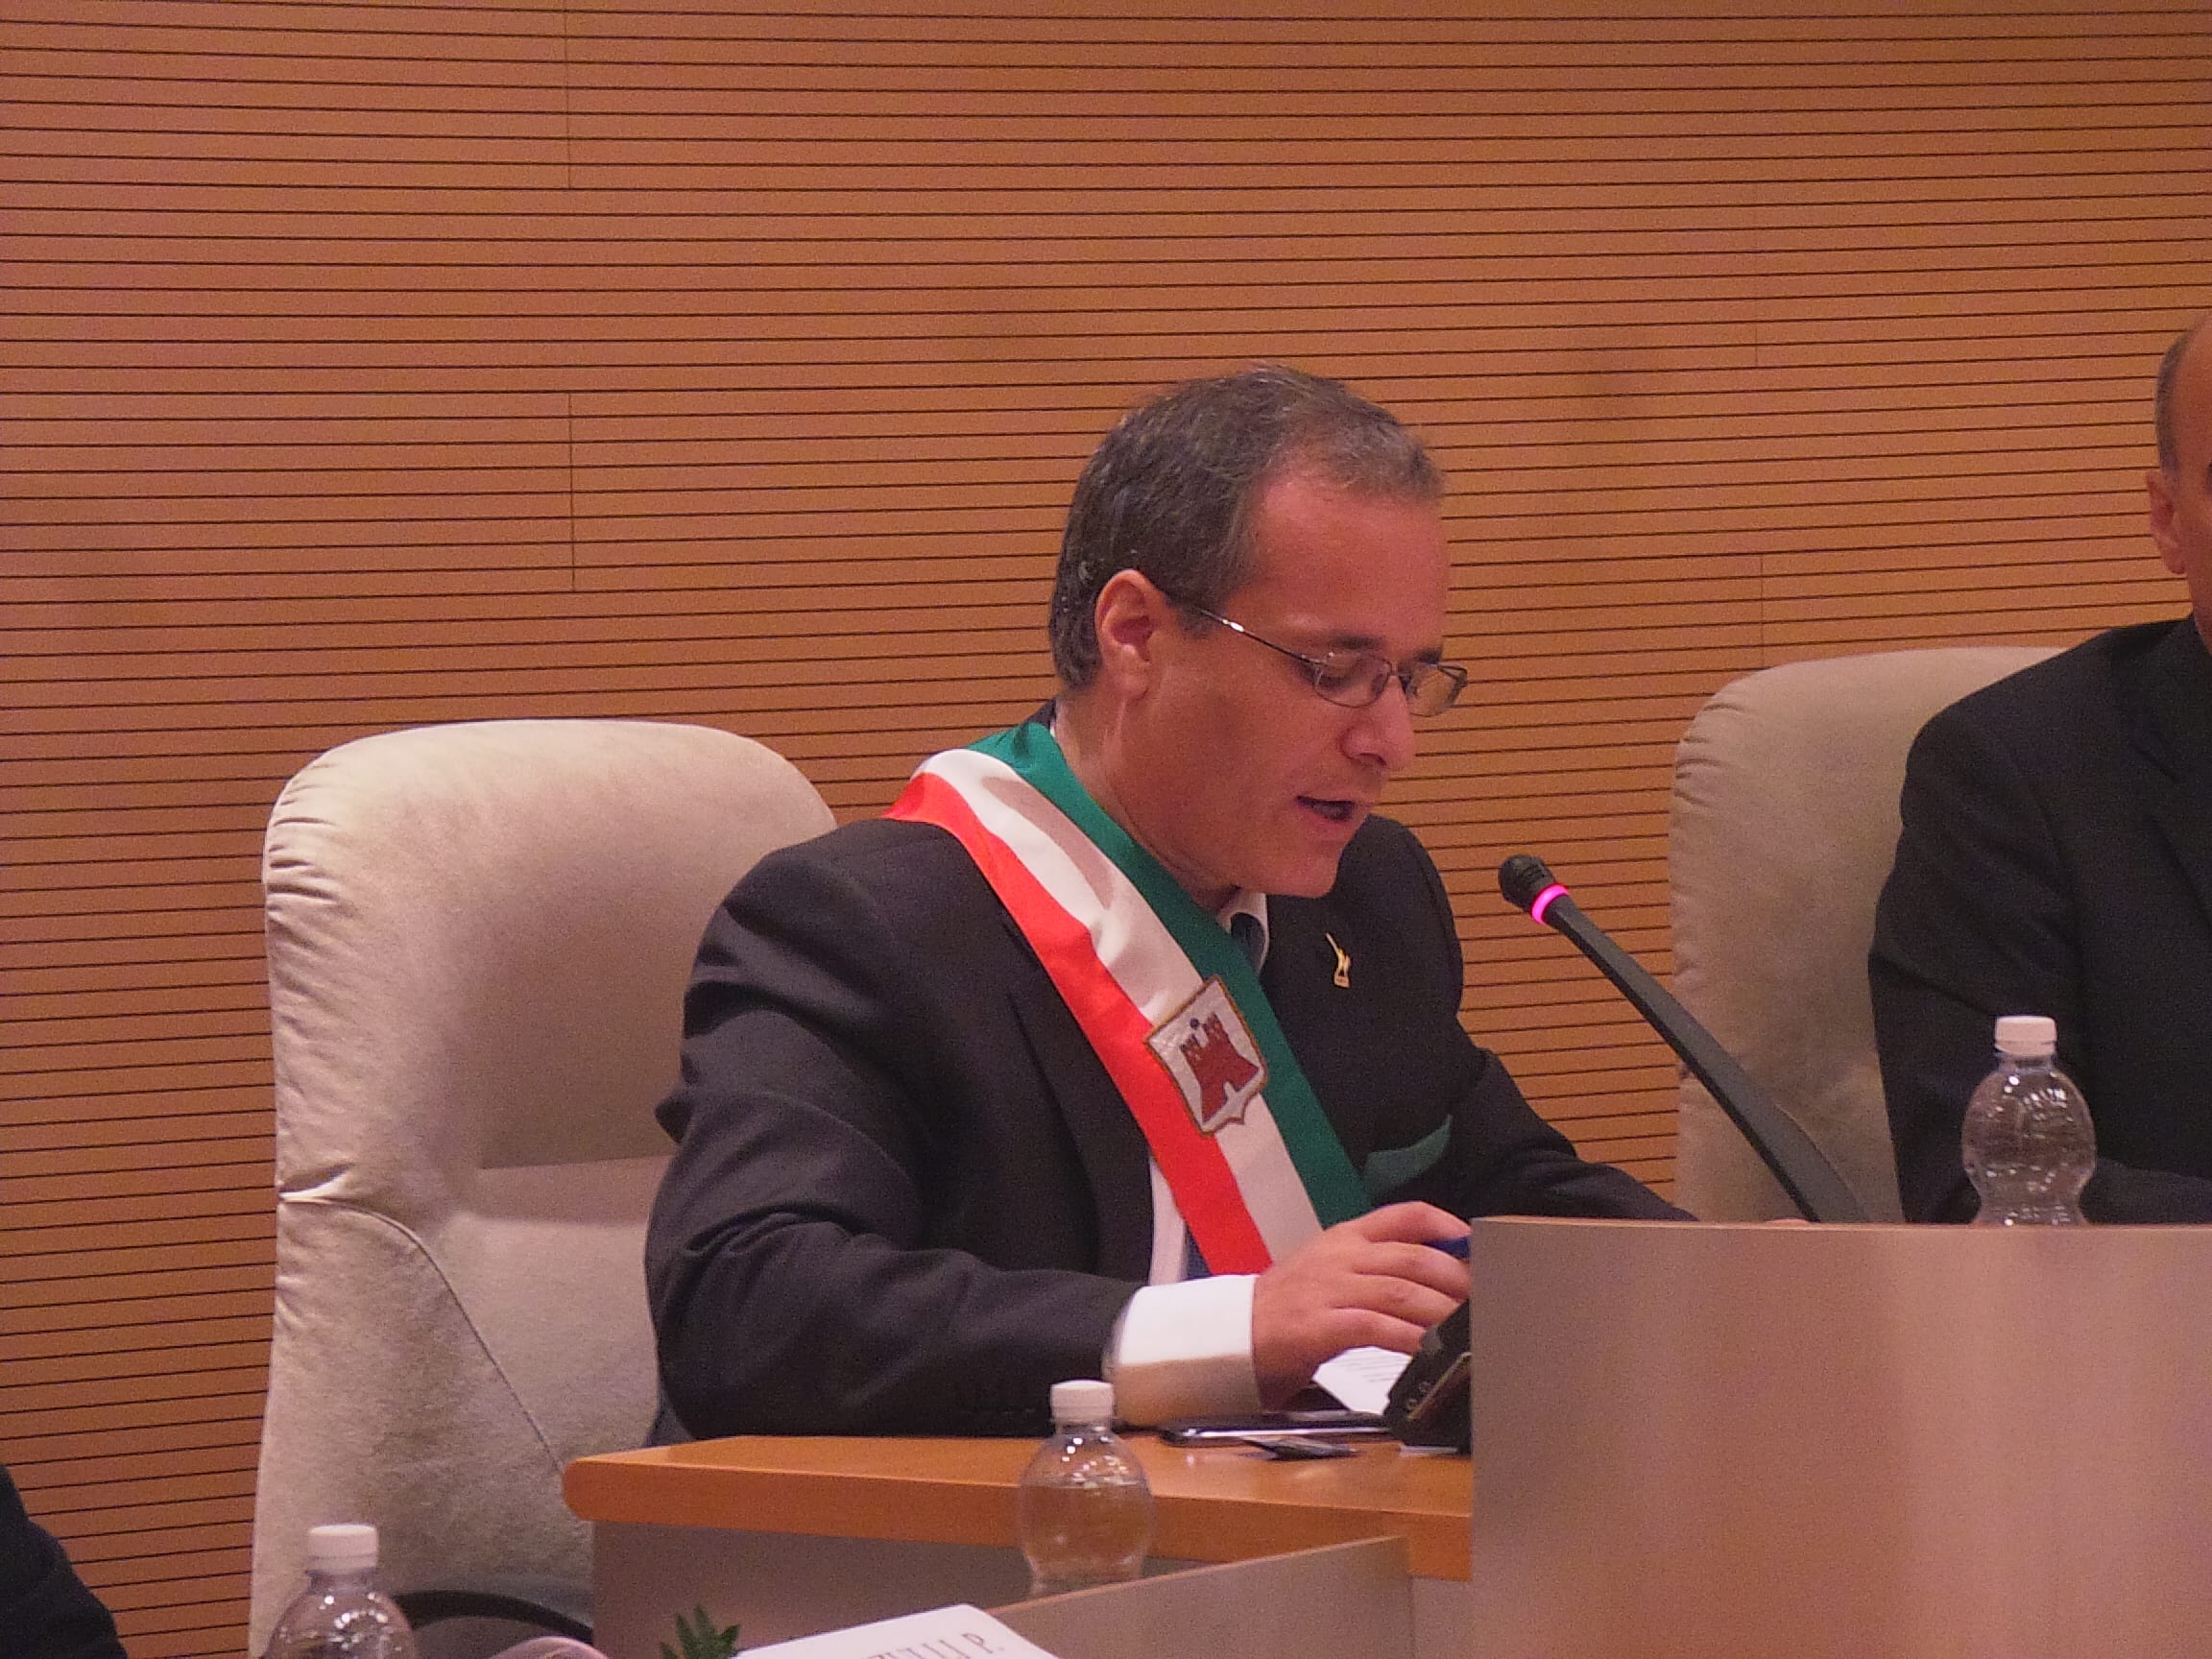 Coronavirus, sindaco Fagioli: “Dimostriamo tutti insieme la dovuta serietà e responsabilità”